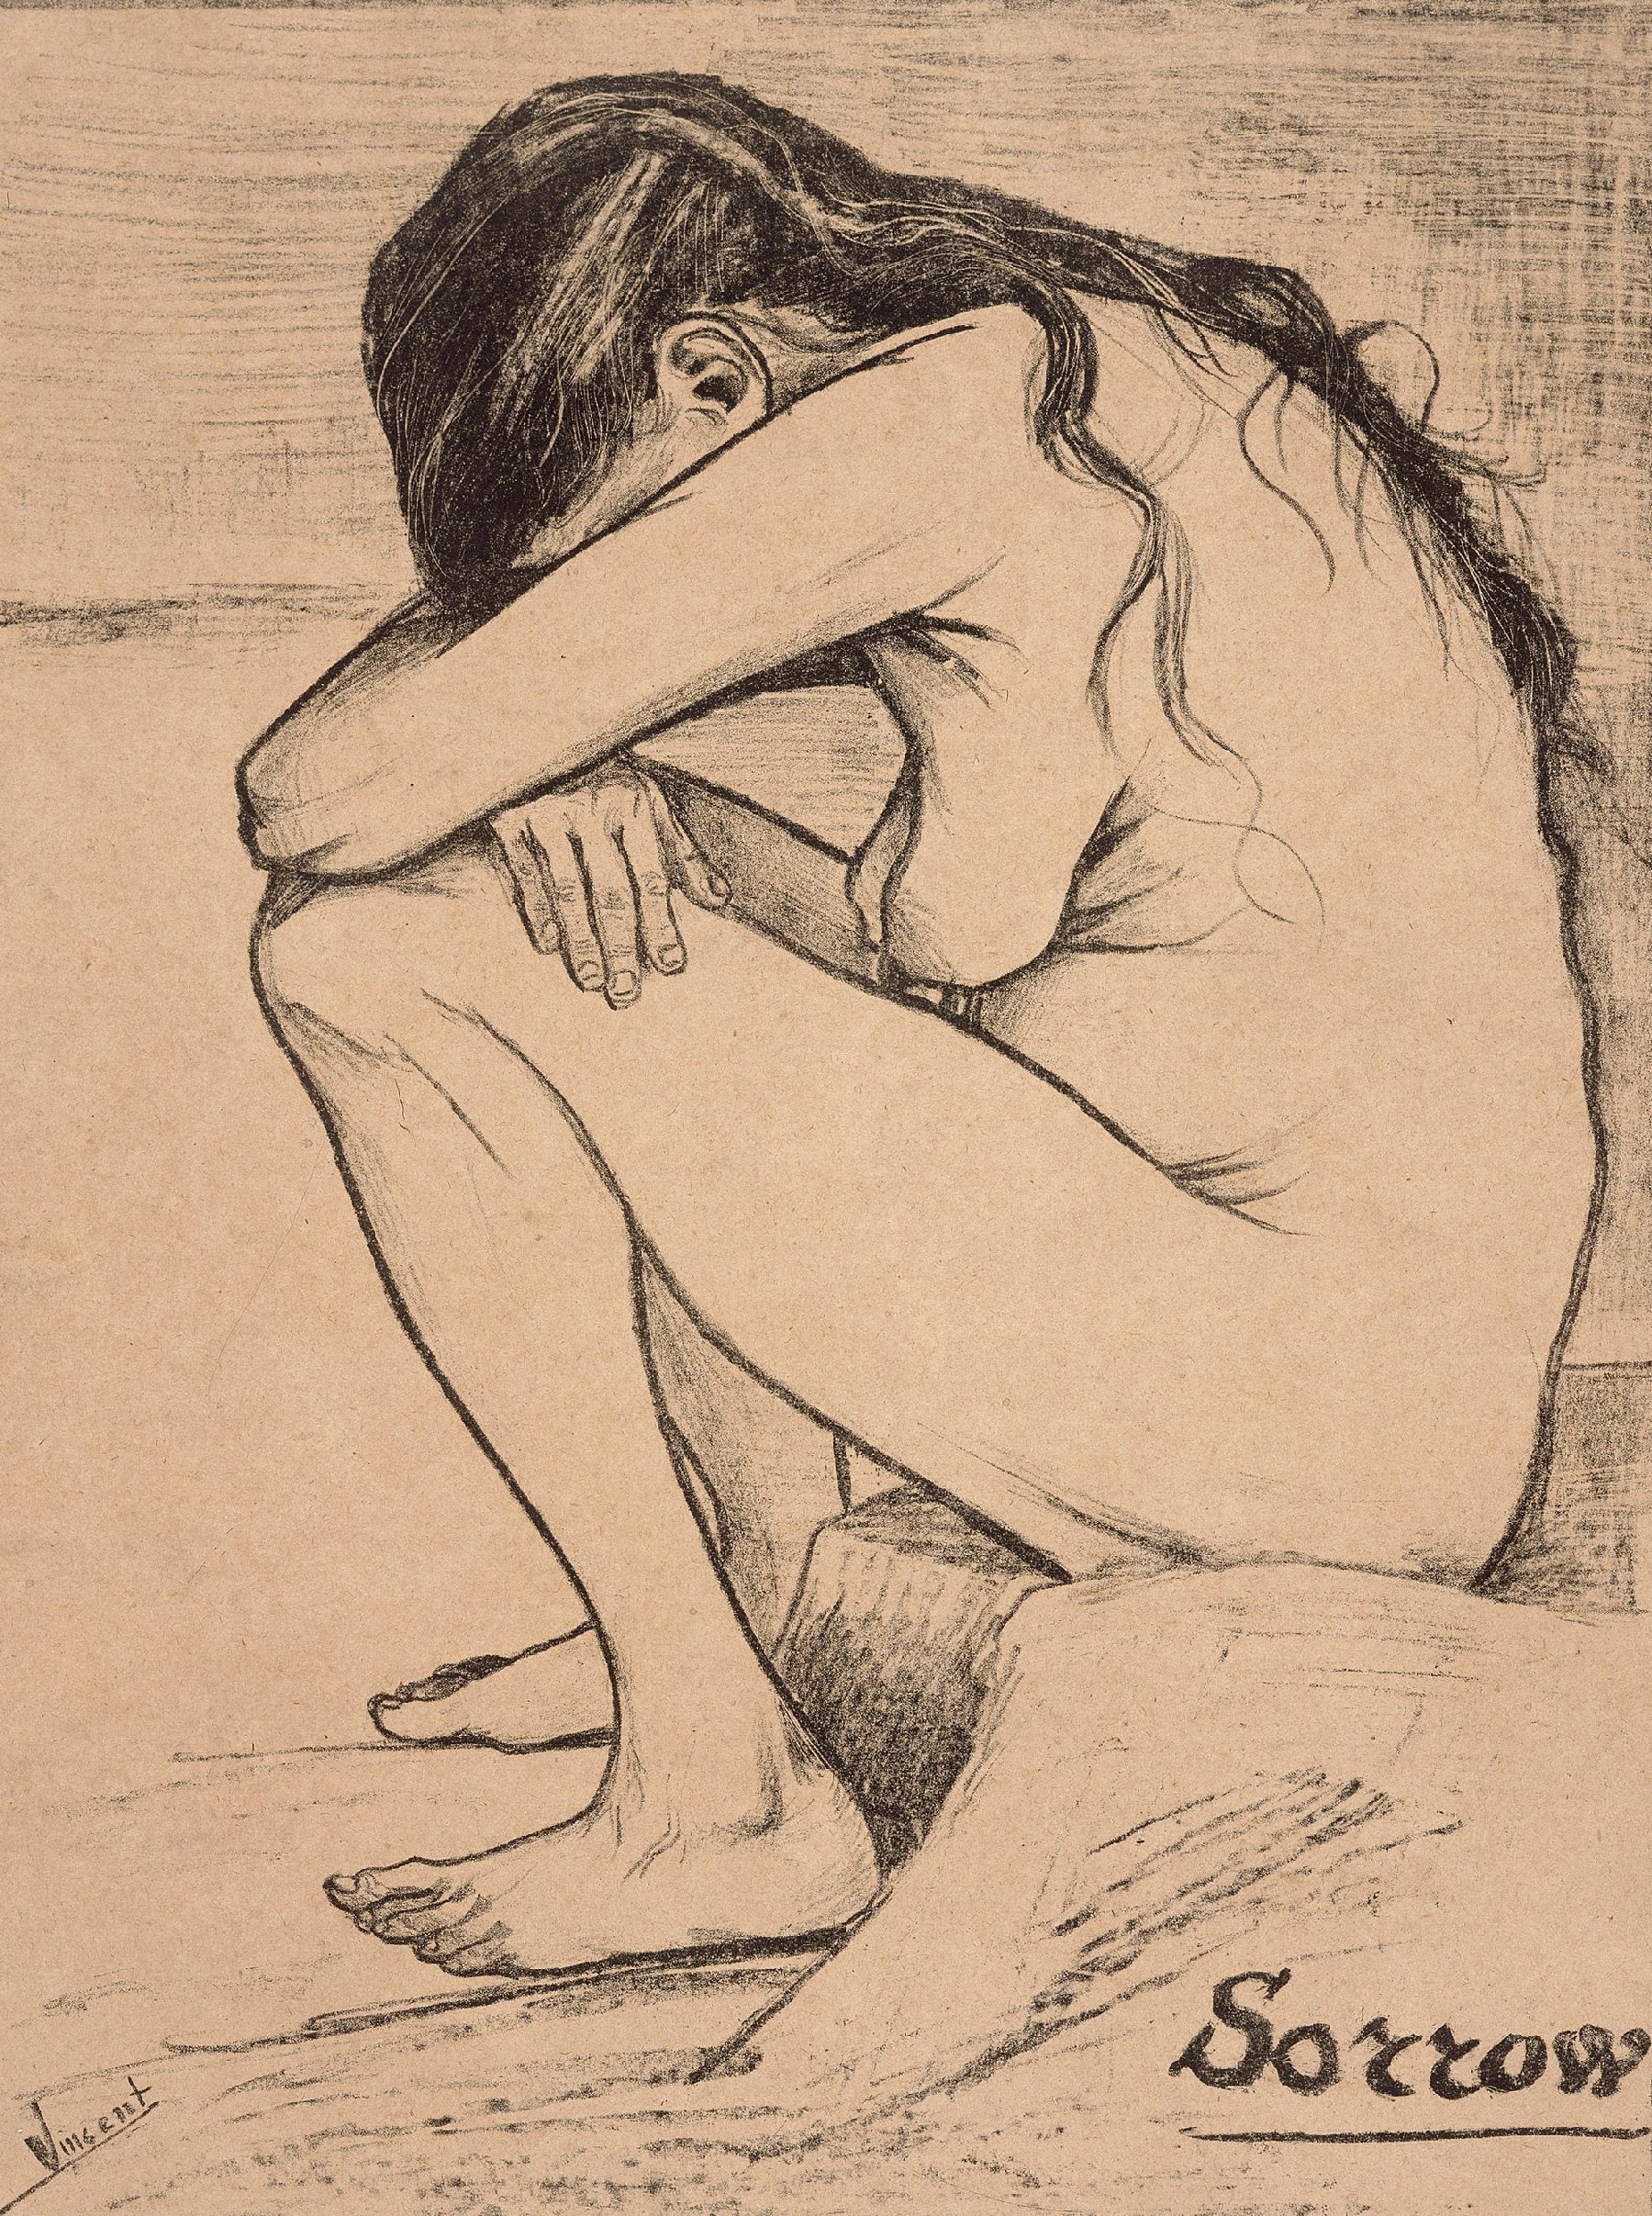 Sorrow Vincent van Gogh (1853 - 1890), Den Haag, november 1882